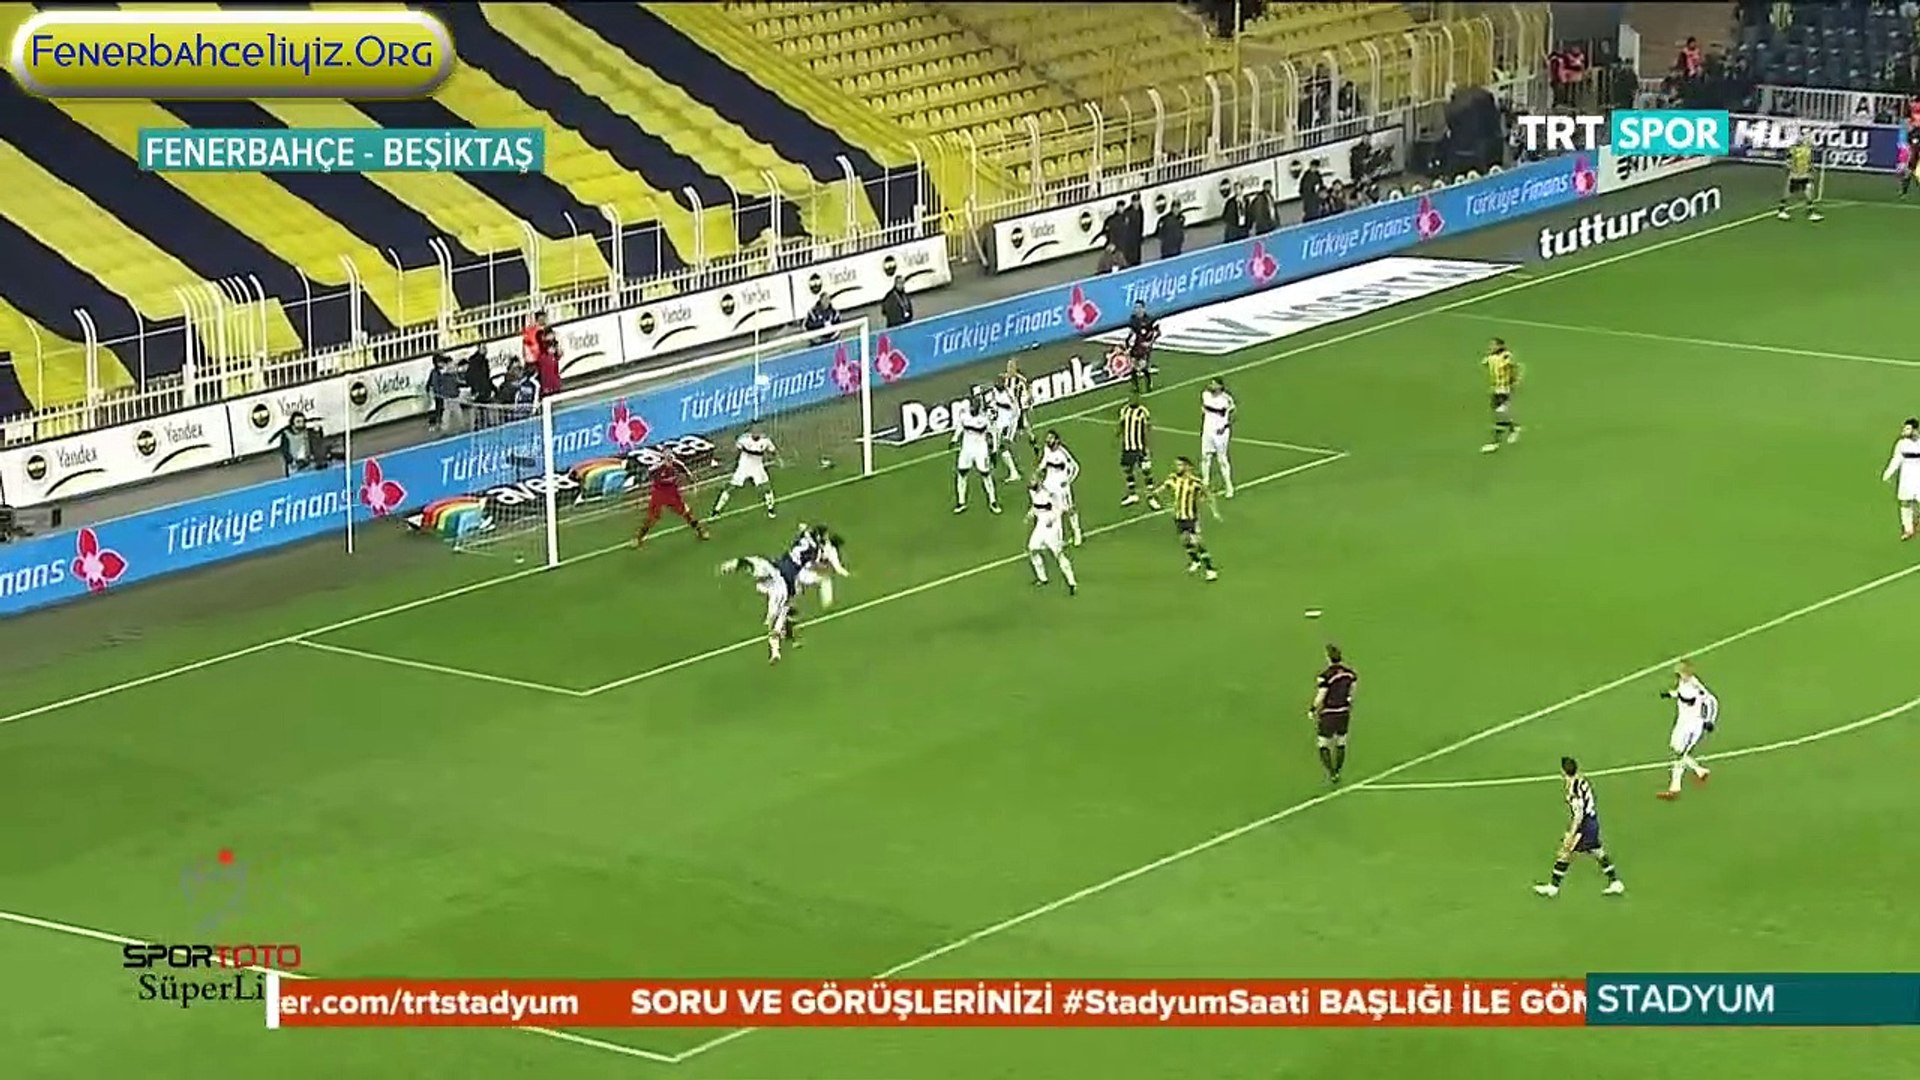 Fenerbahçe 1 - 0 Beşiktaş 2014-2015 Sezonu Geniş Özet - Dailymotion Video